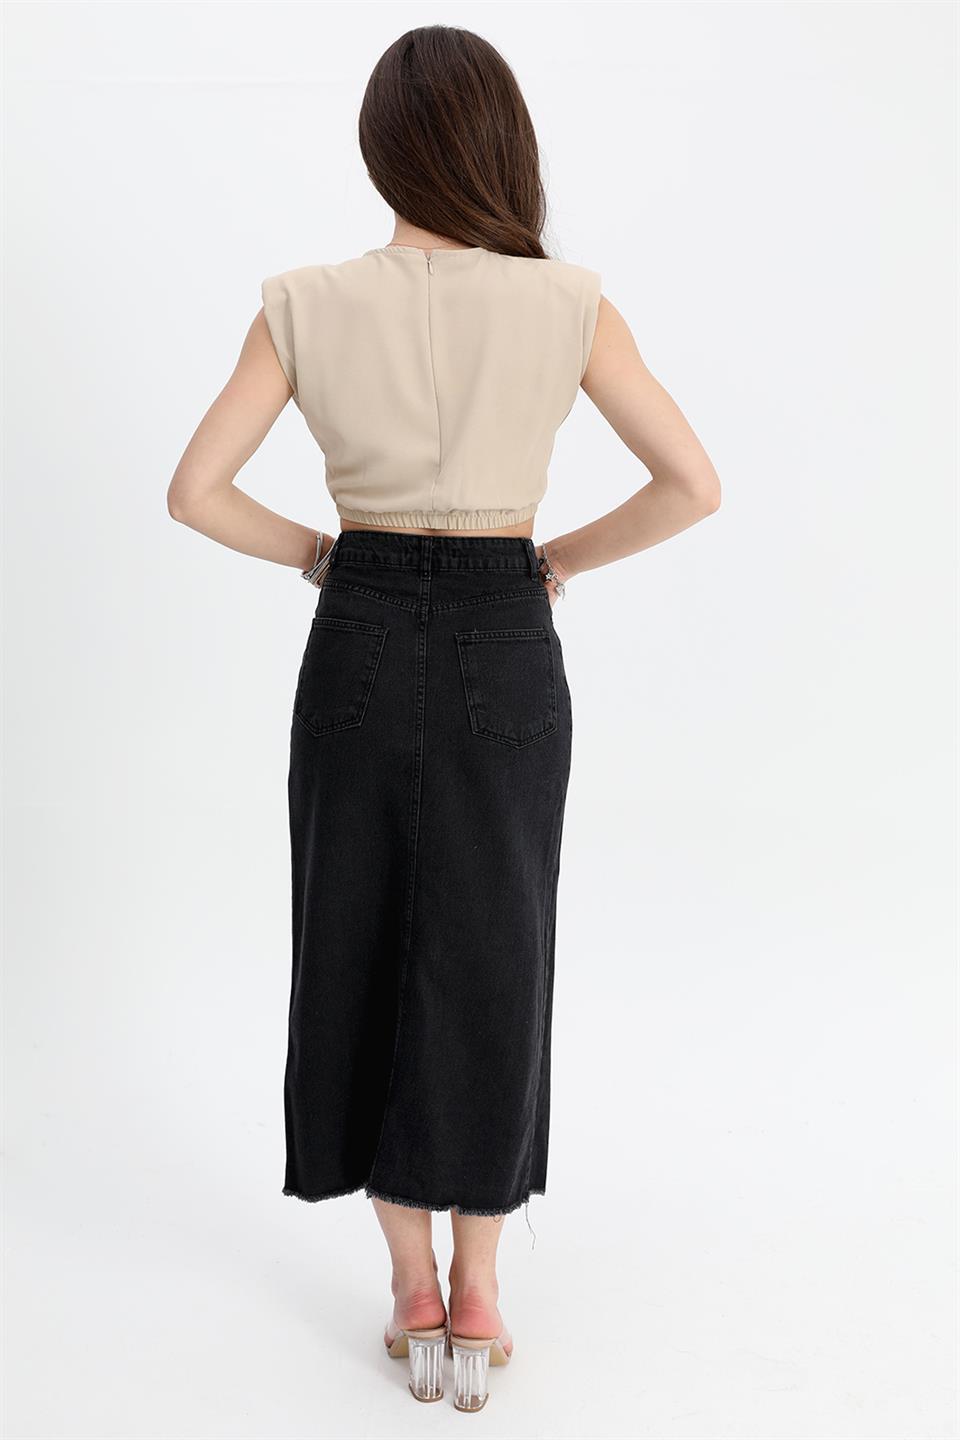 Women's Denim Skirt Front Slit Skirt Tasseled - Black - STREET MODE ™